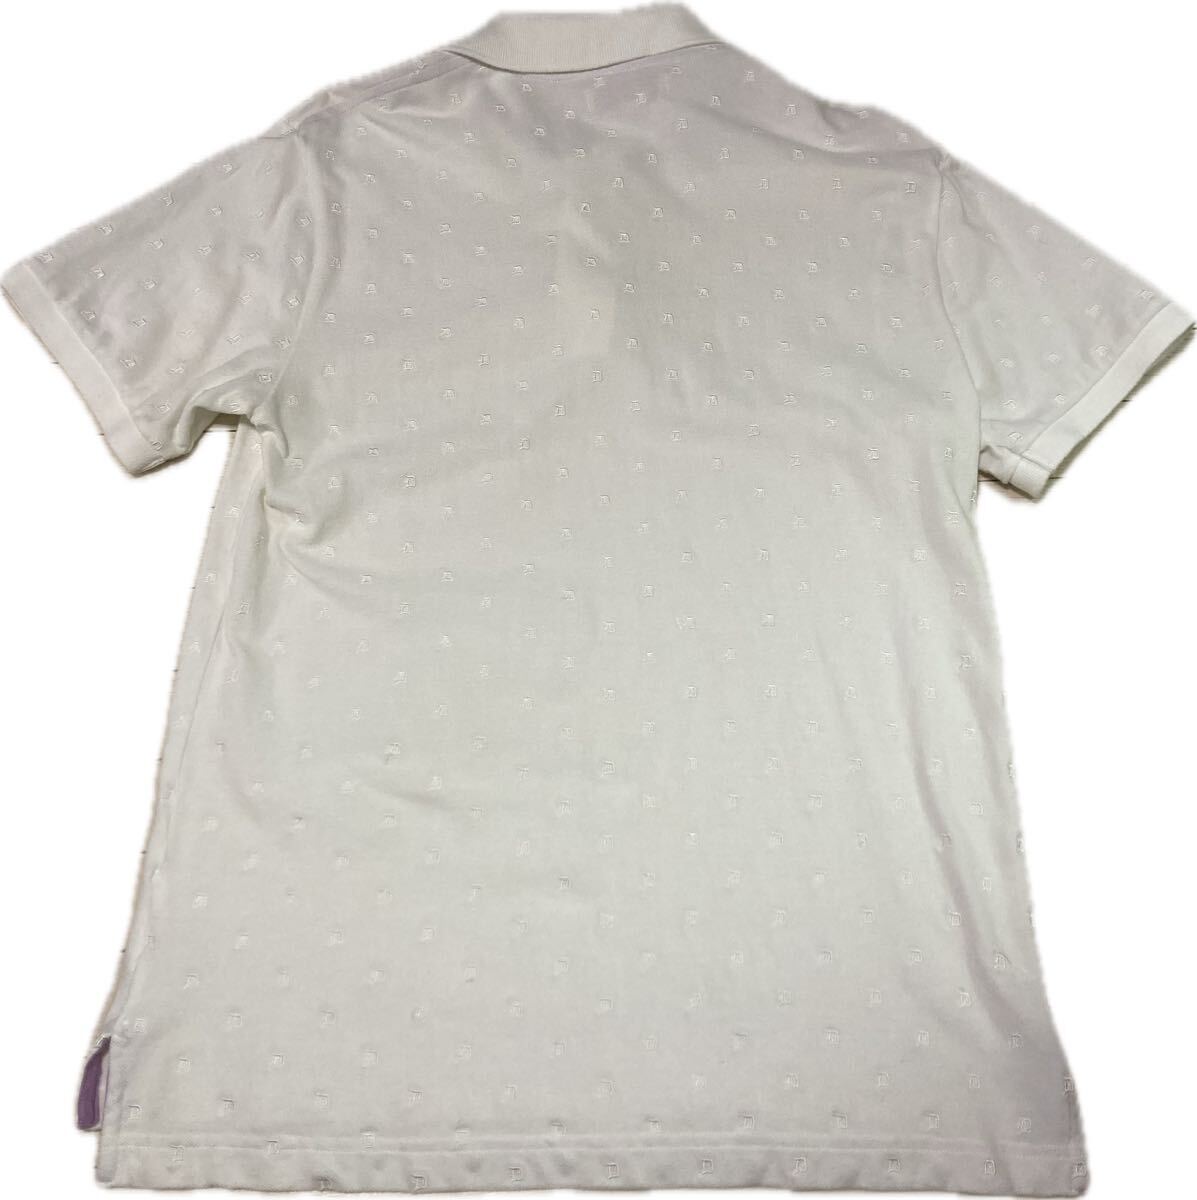 ダファー ポロシャツ イギリス ロンドン シャツ duffer 総柄 刺繍 半袖ポロシャツ 半袖 白 ホワイト の画像2